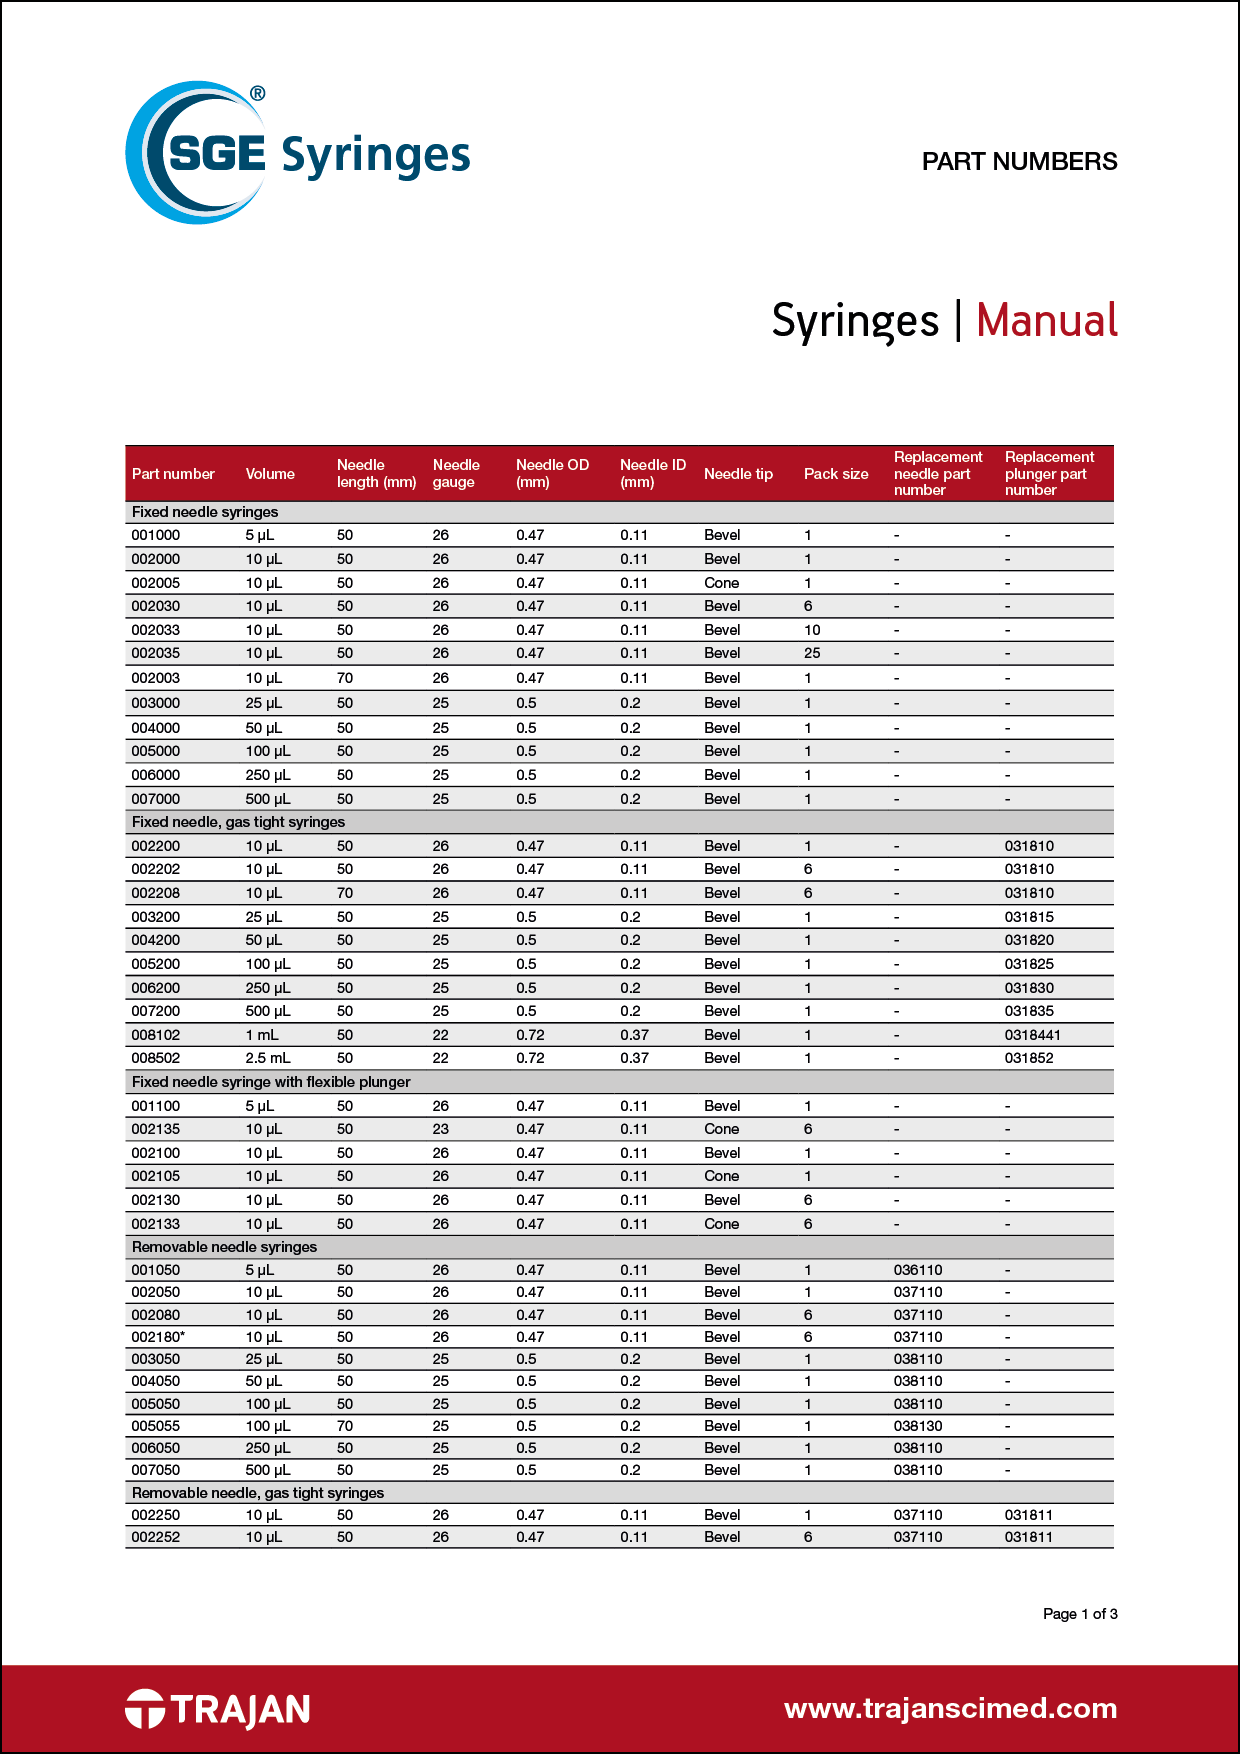 Part Number List - SGE manual syringes